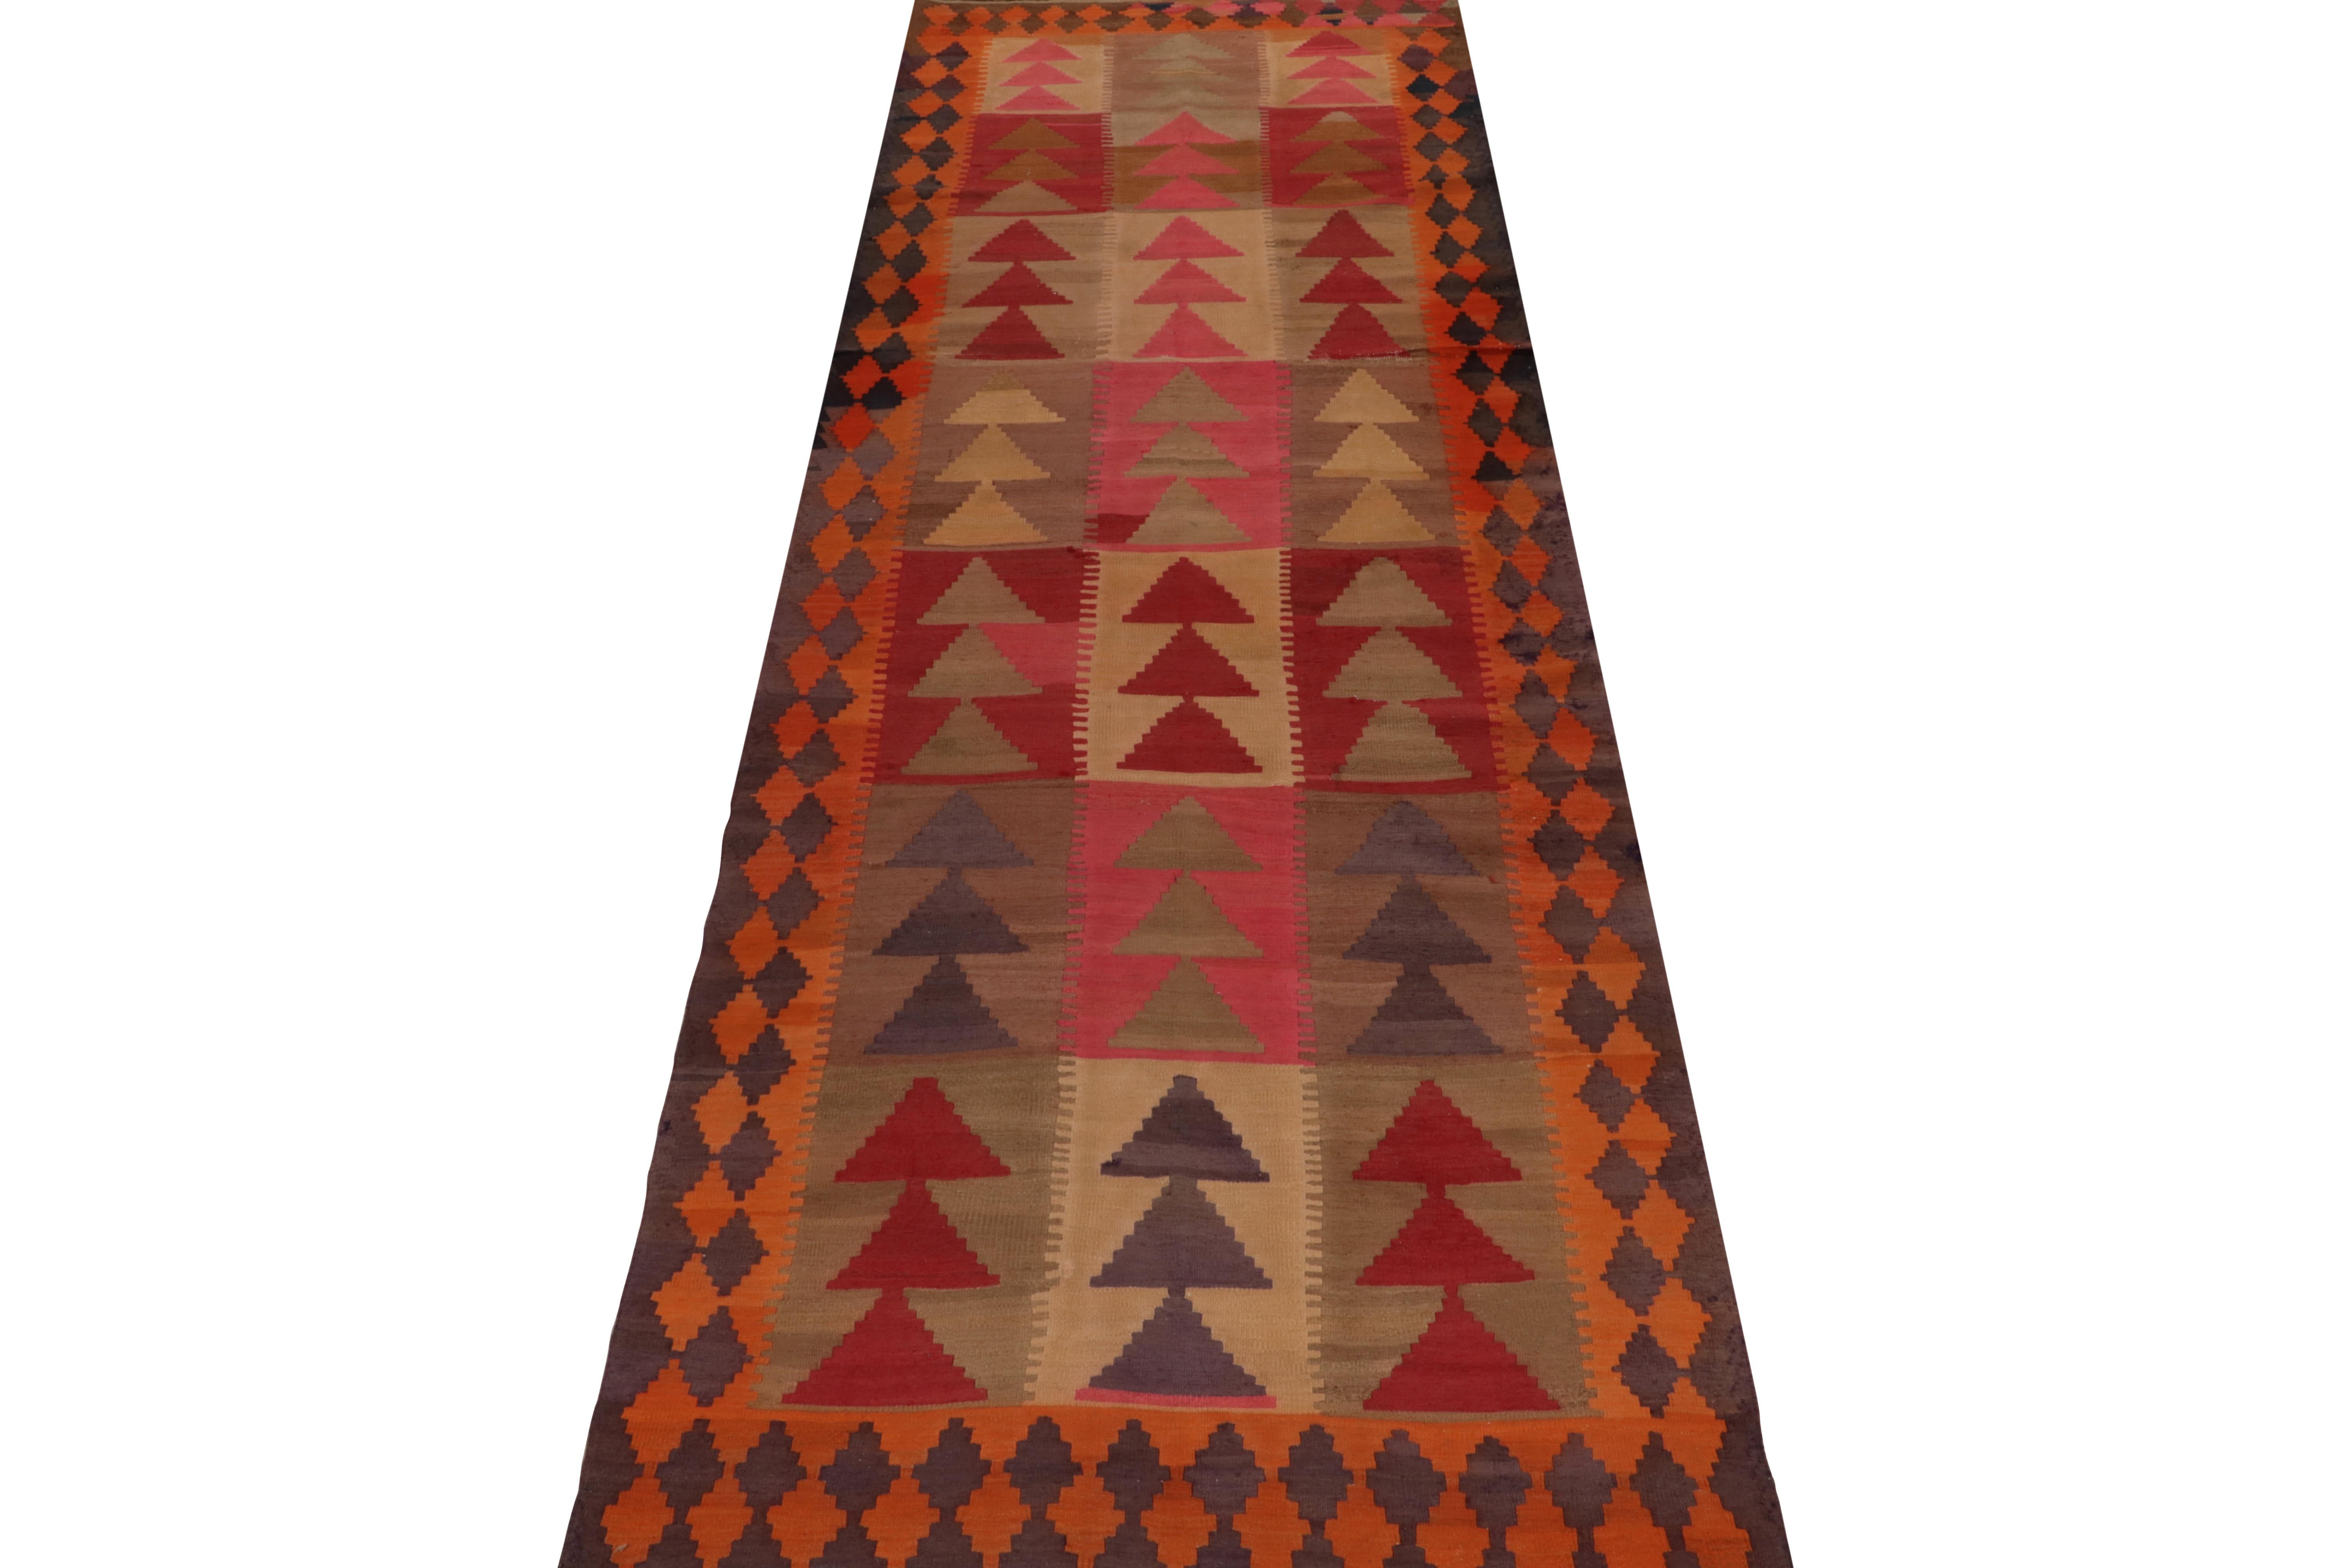 Indian Vintage Tribal Kilim Rug in Beige & Multicolor Geometric Patterns by Rug & Kilim